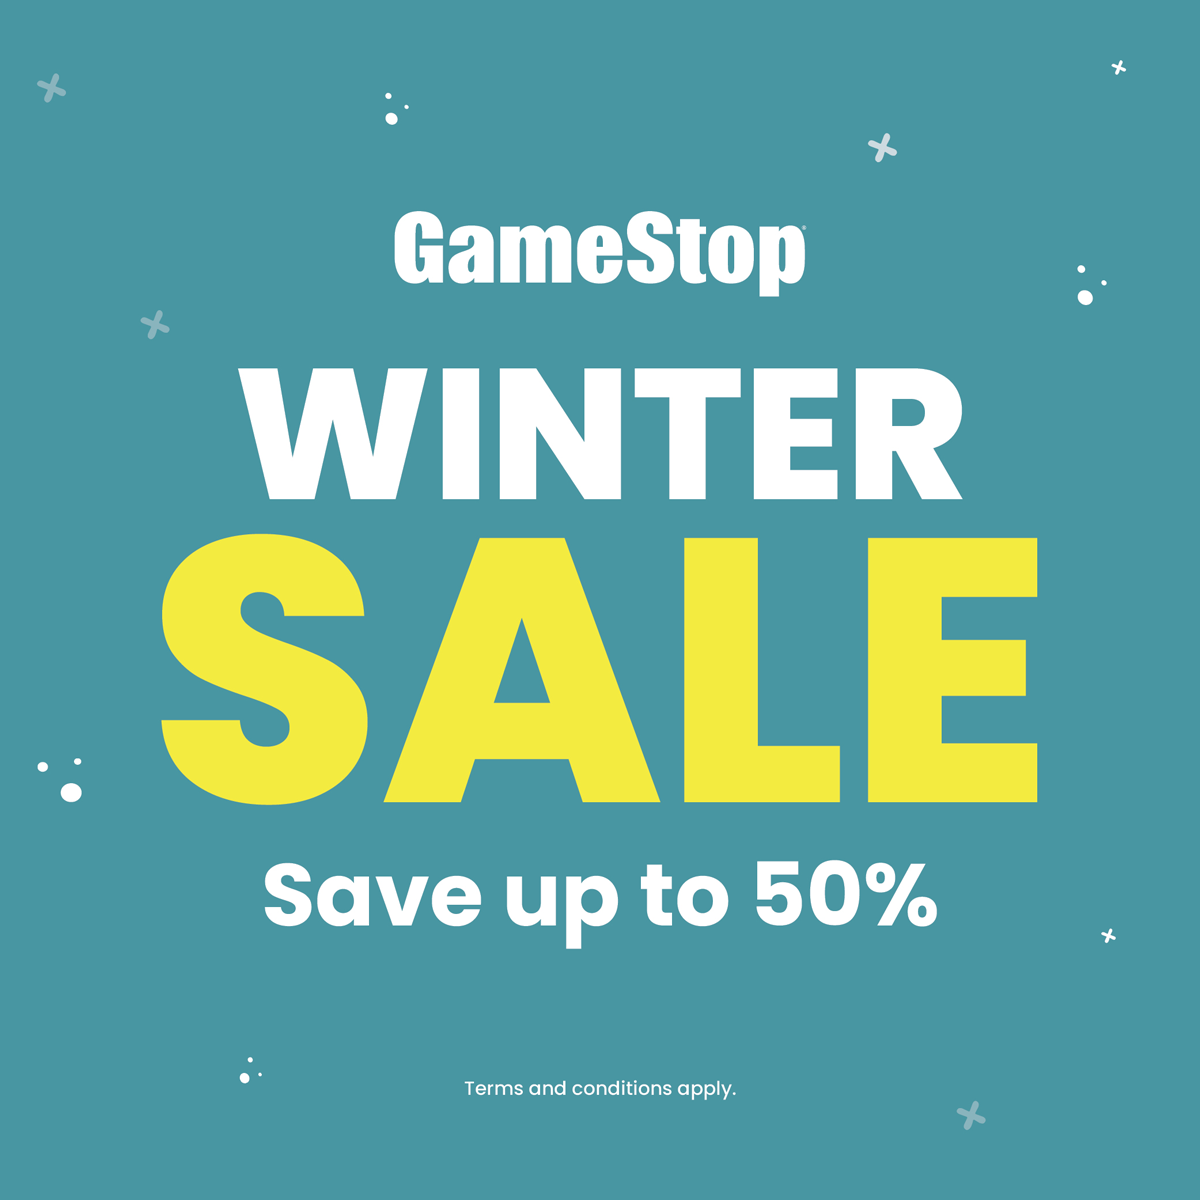 The GameStop Winter Sale has begun!